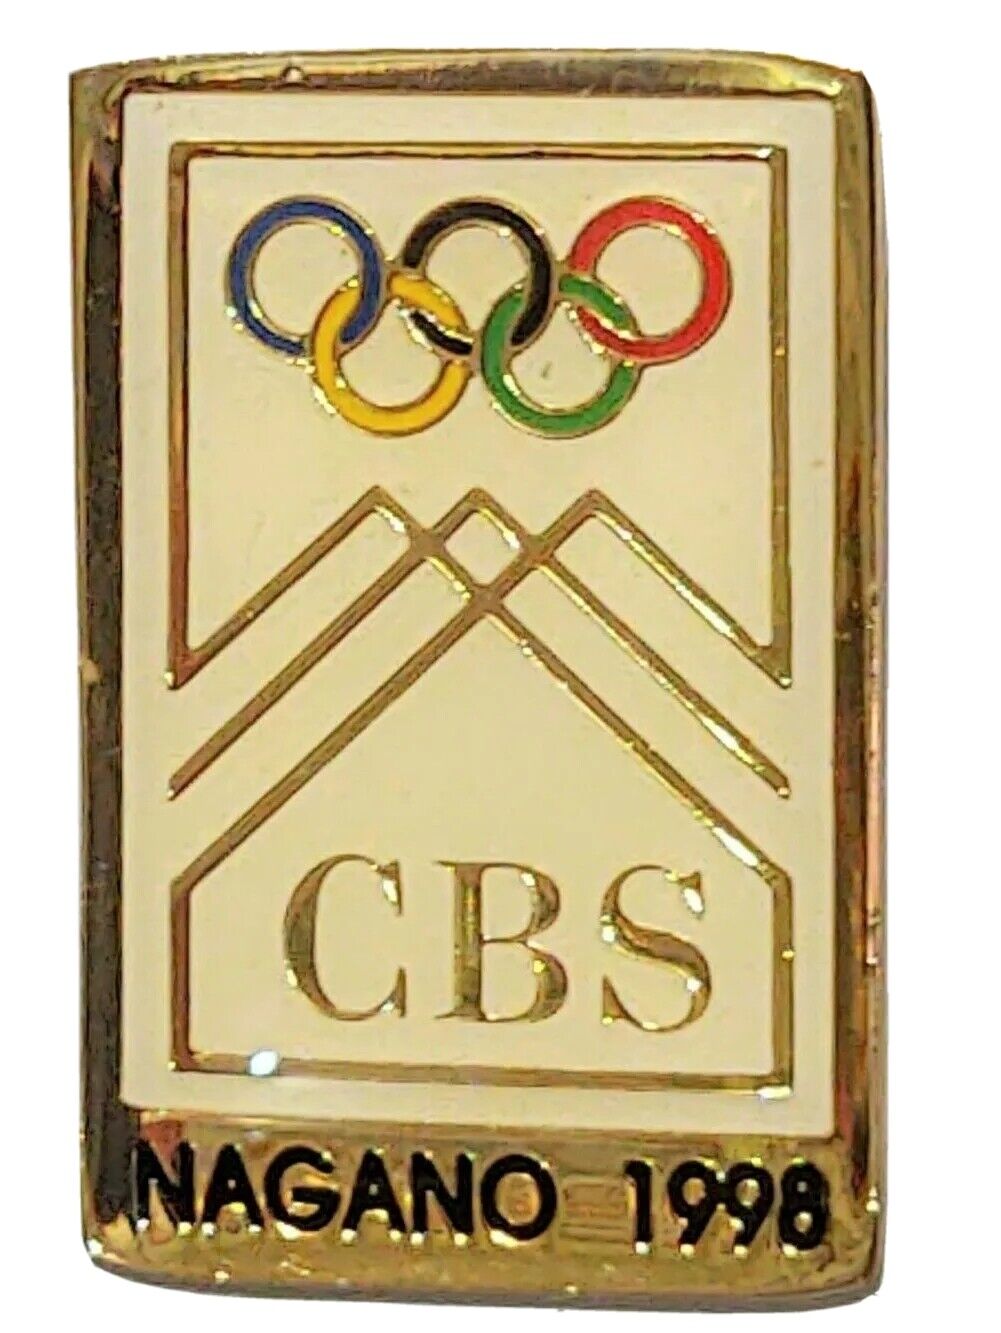 1998 Nagano Olympics CBS White Hat Lapel Pin